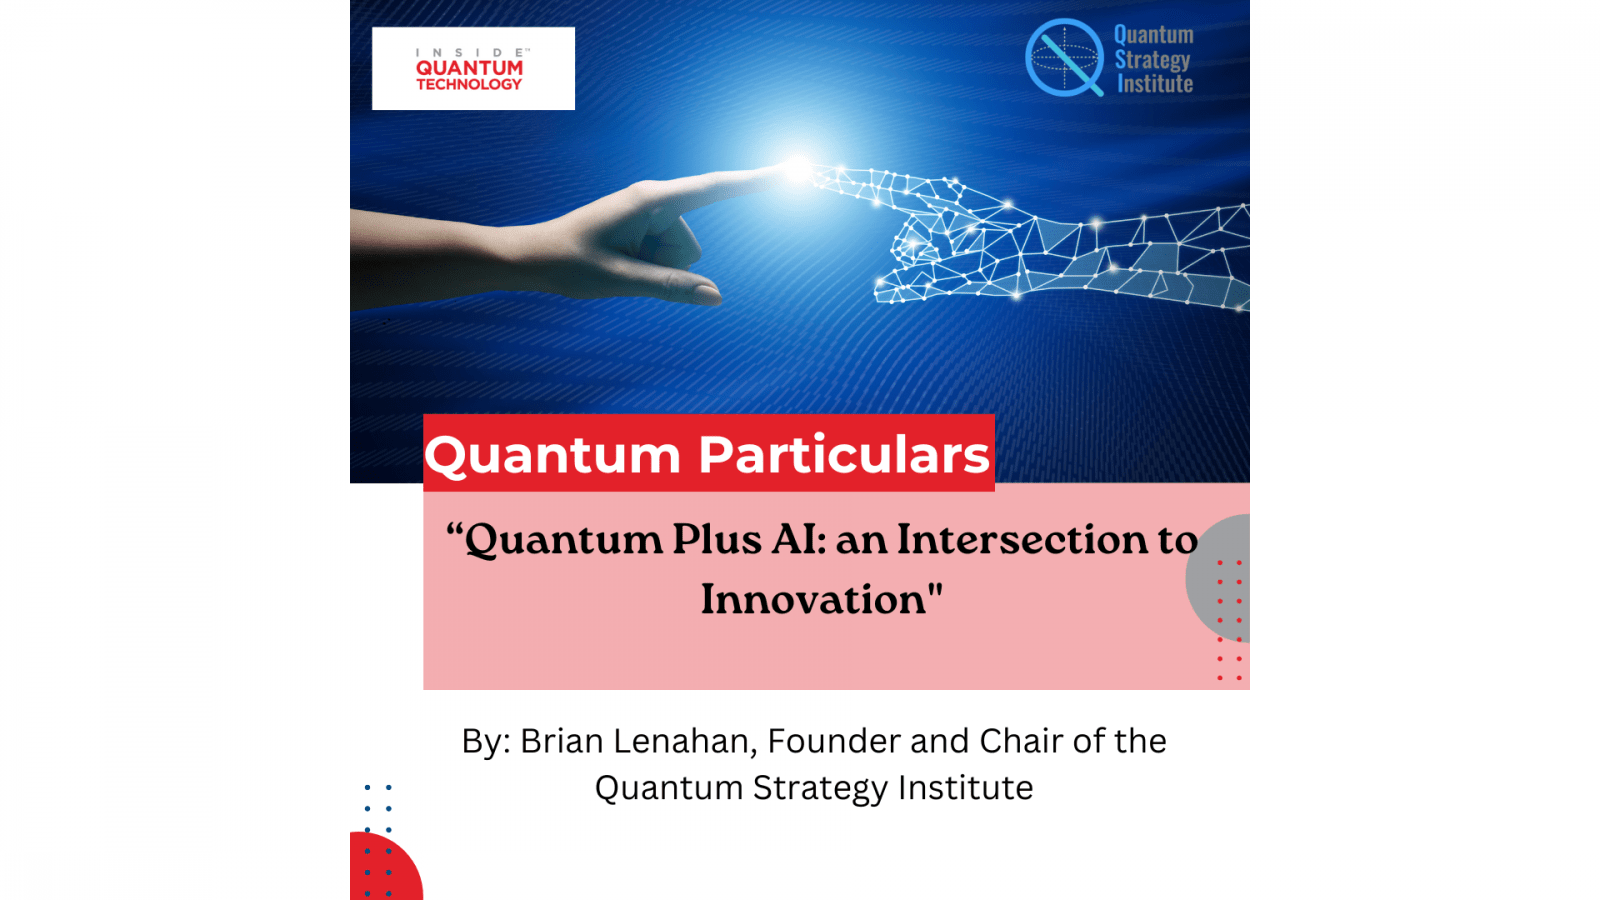 Em um novo artigo convidado, Brian Lenahan, fundador e presidente do Quantum Strategy Institute, discute a interseção entre IA e computação quântica.